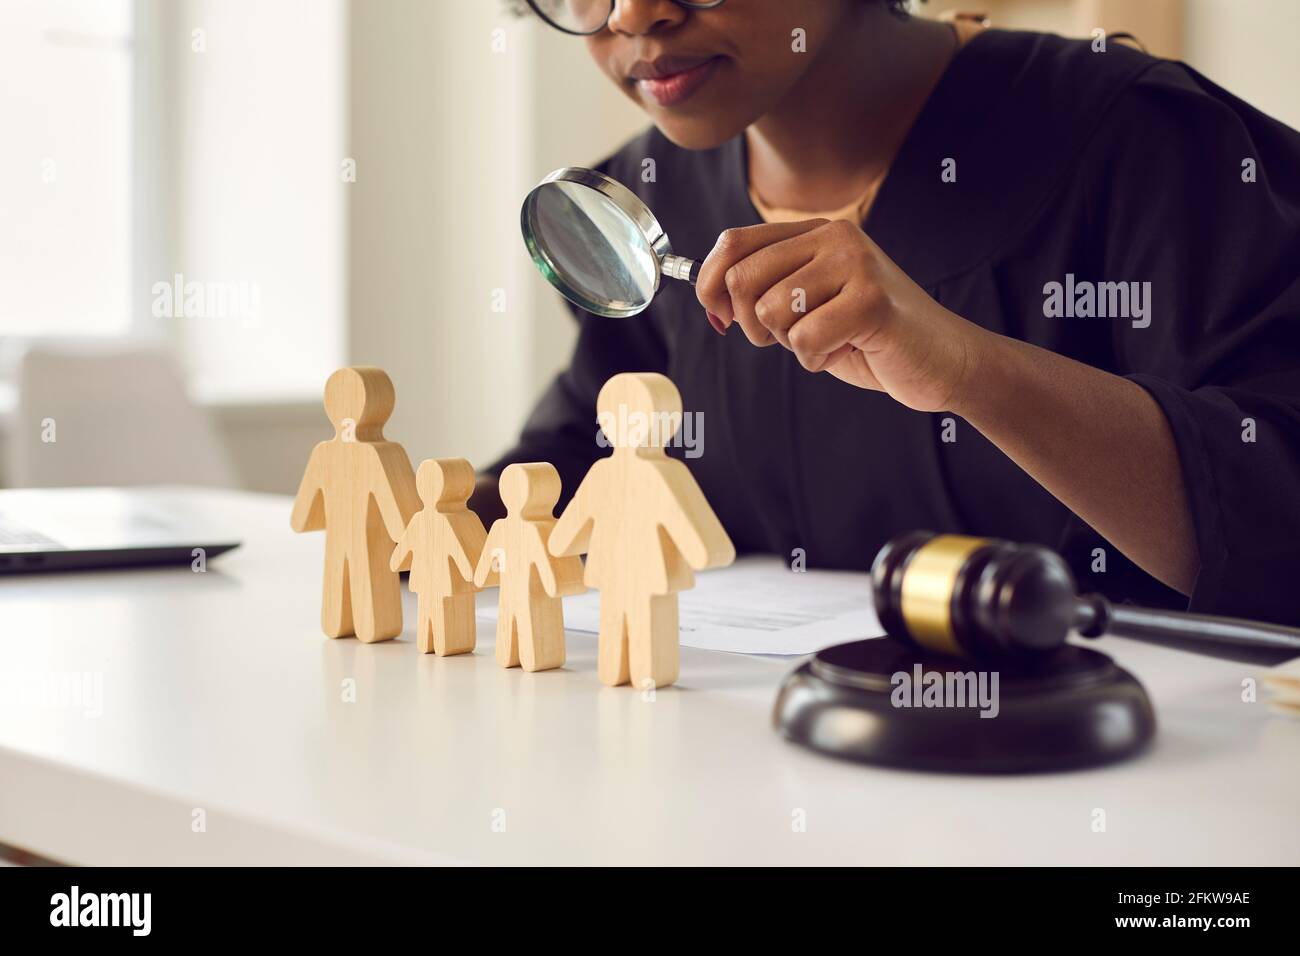 Richter mit Lupe Blick auf kleine Familienfiguren stehen Auf ihrem Tisch Stockfoto